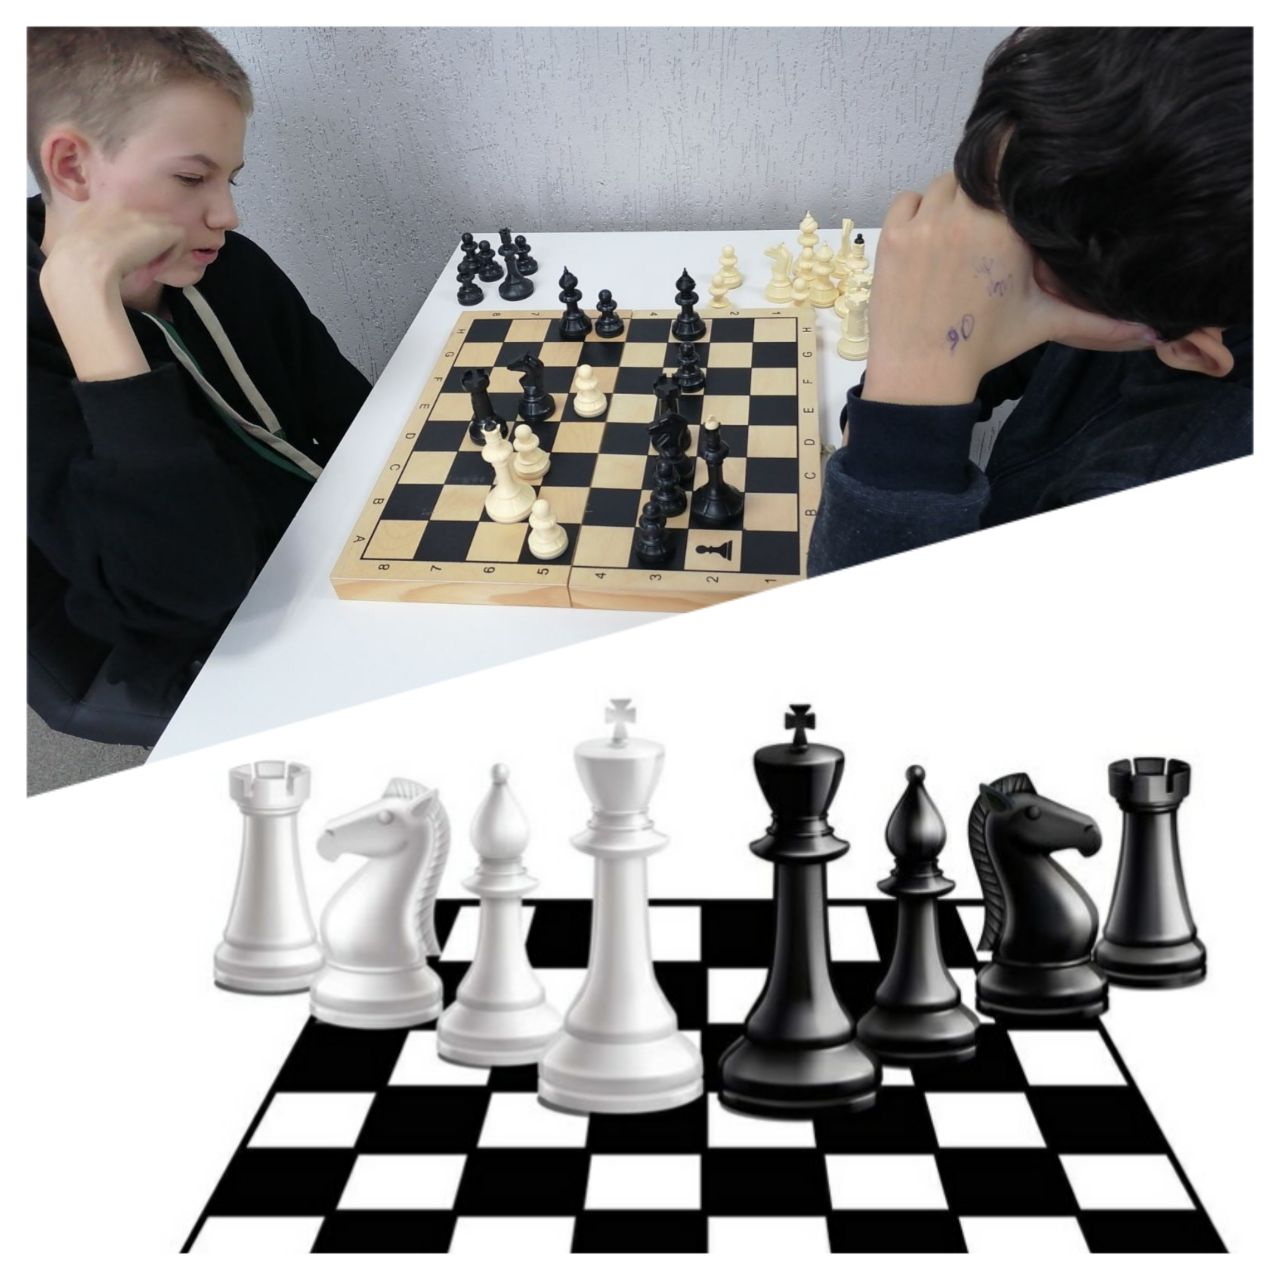 Шахматы- замечательный повод для общения людей